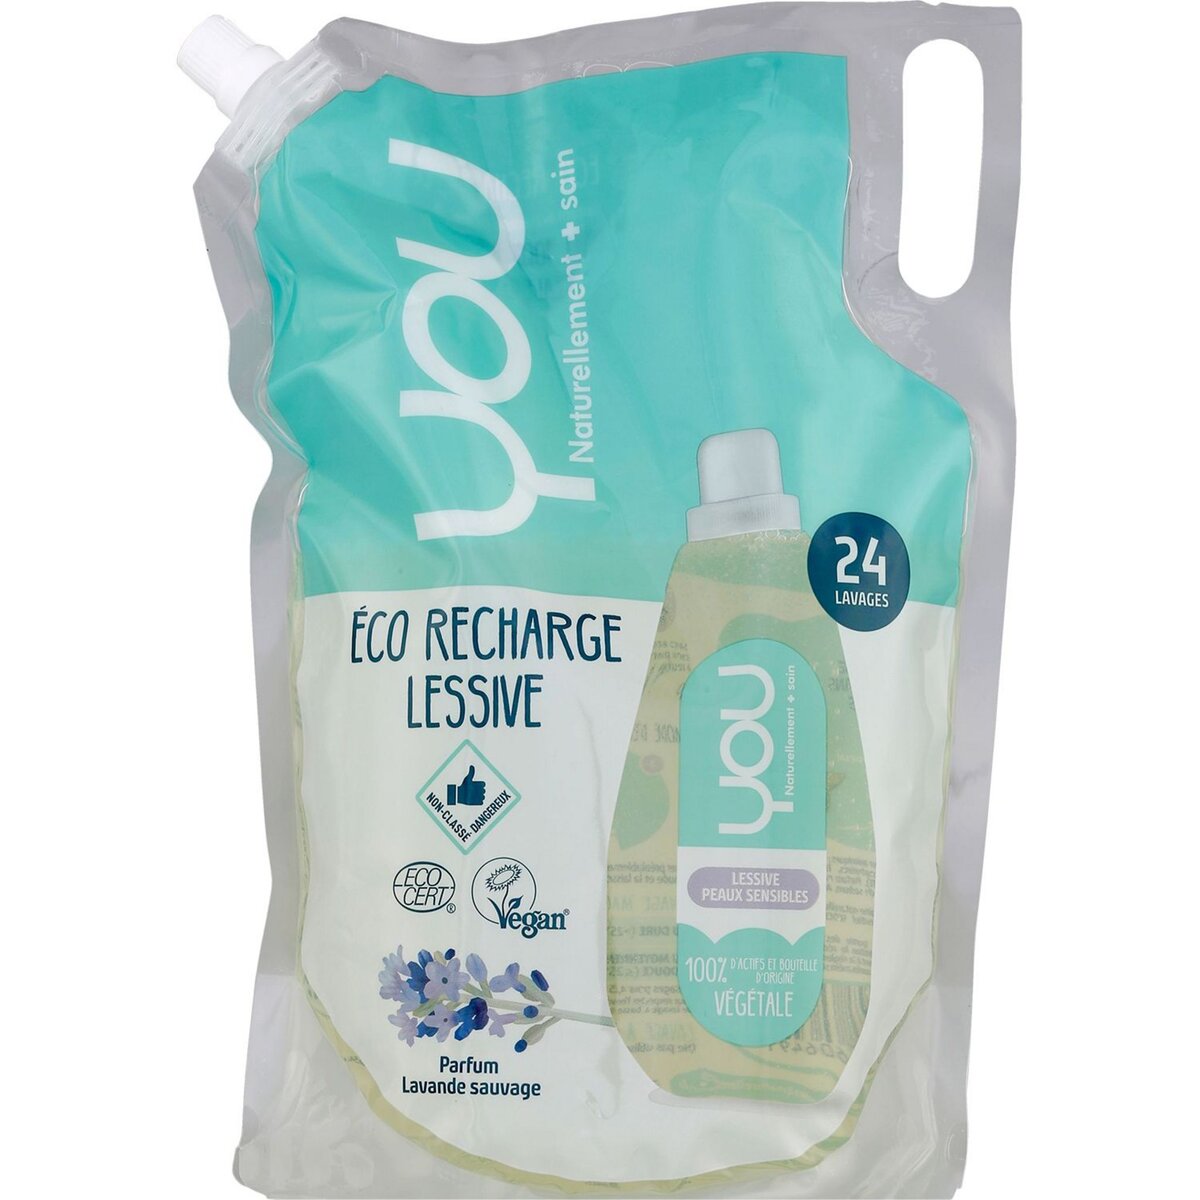 Recharge lessive liquide peau sensible lavande YOU : la recharge